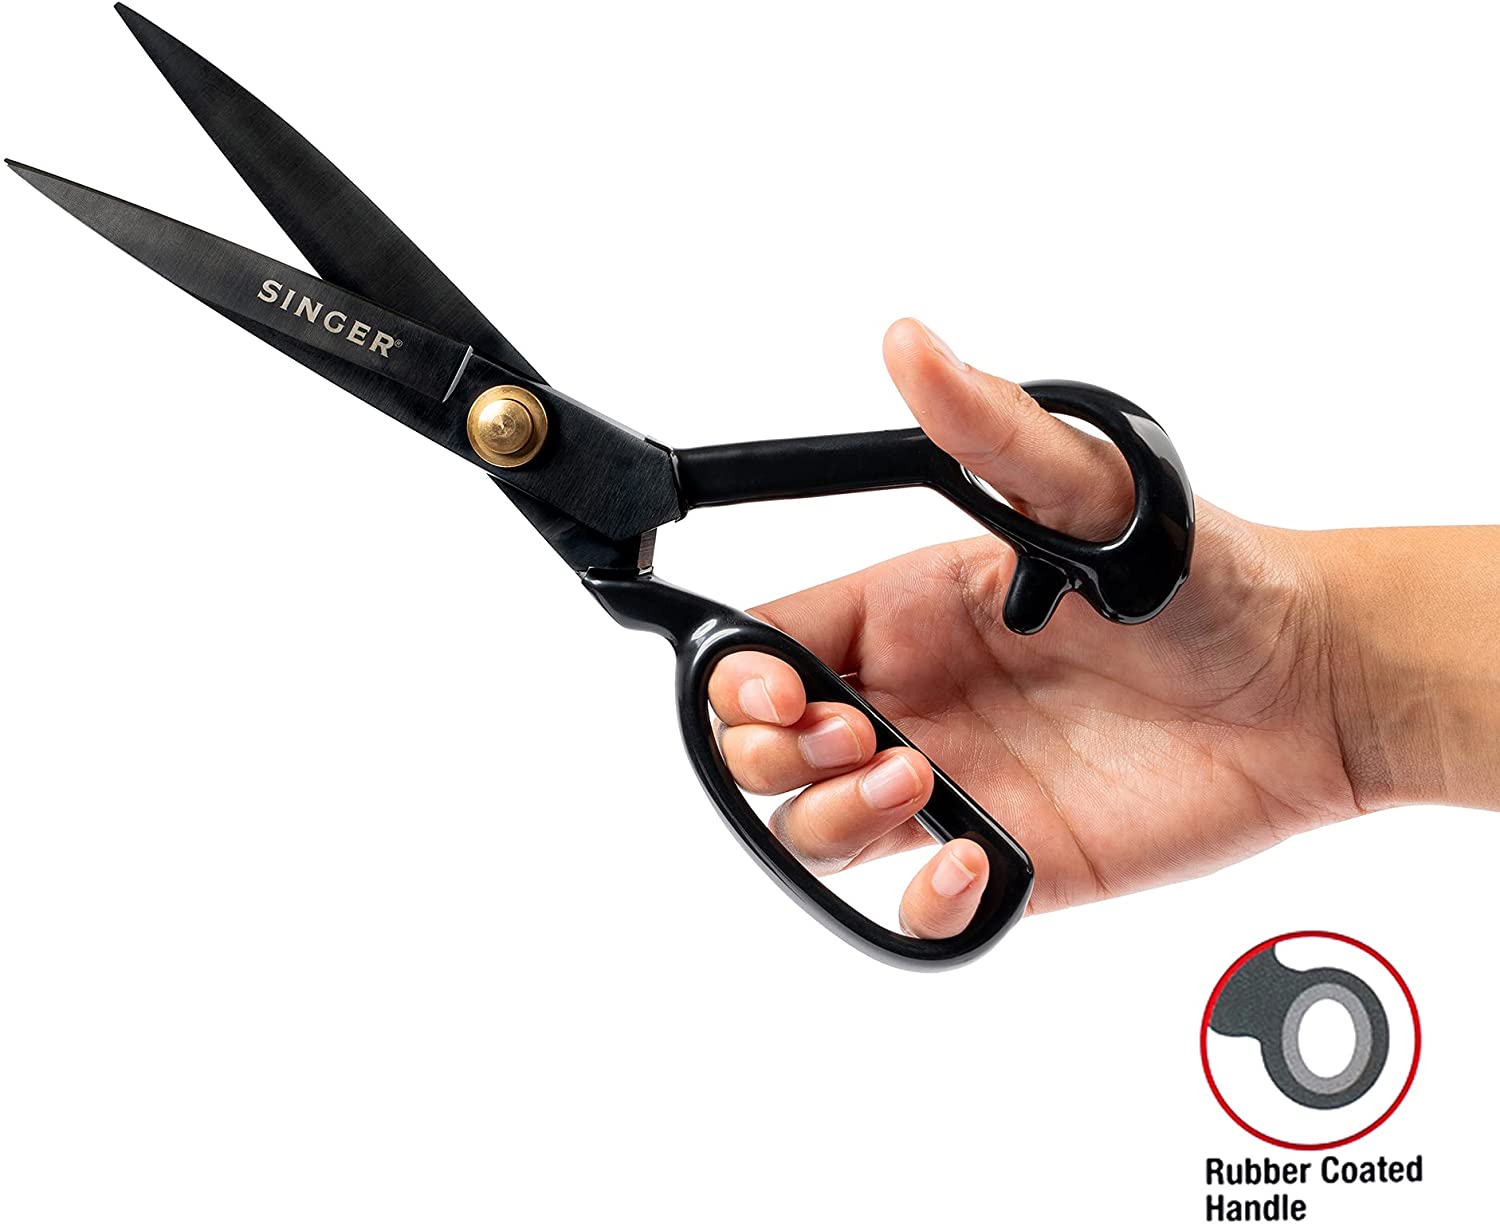 Singer ProSeries Forged Tailor Scissors 10-Black 